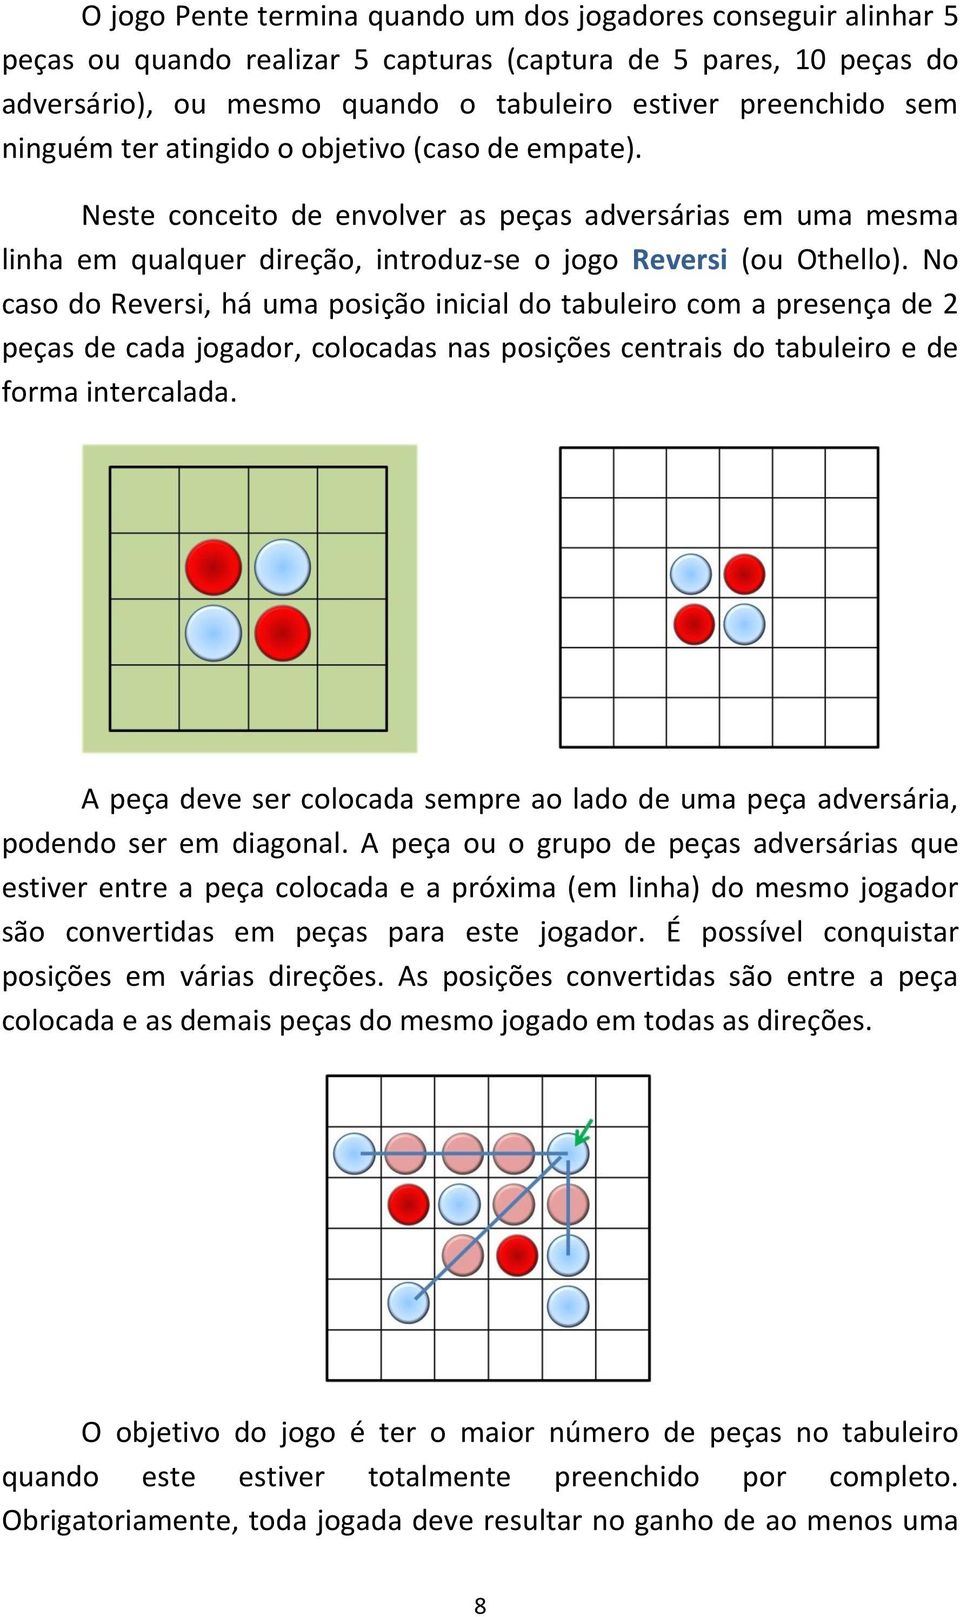 No caso do Reversi, há uma posição inicial do tabuleiro com a presença de 2 peças de cada jogador, colocadas nas posições centrais do tabuleiro e de forma intercalada.